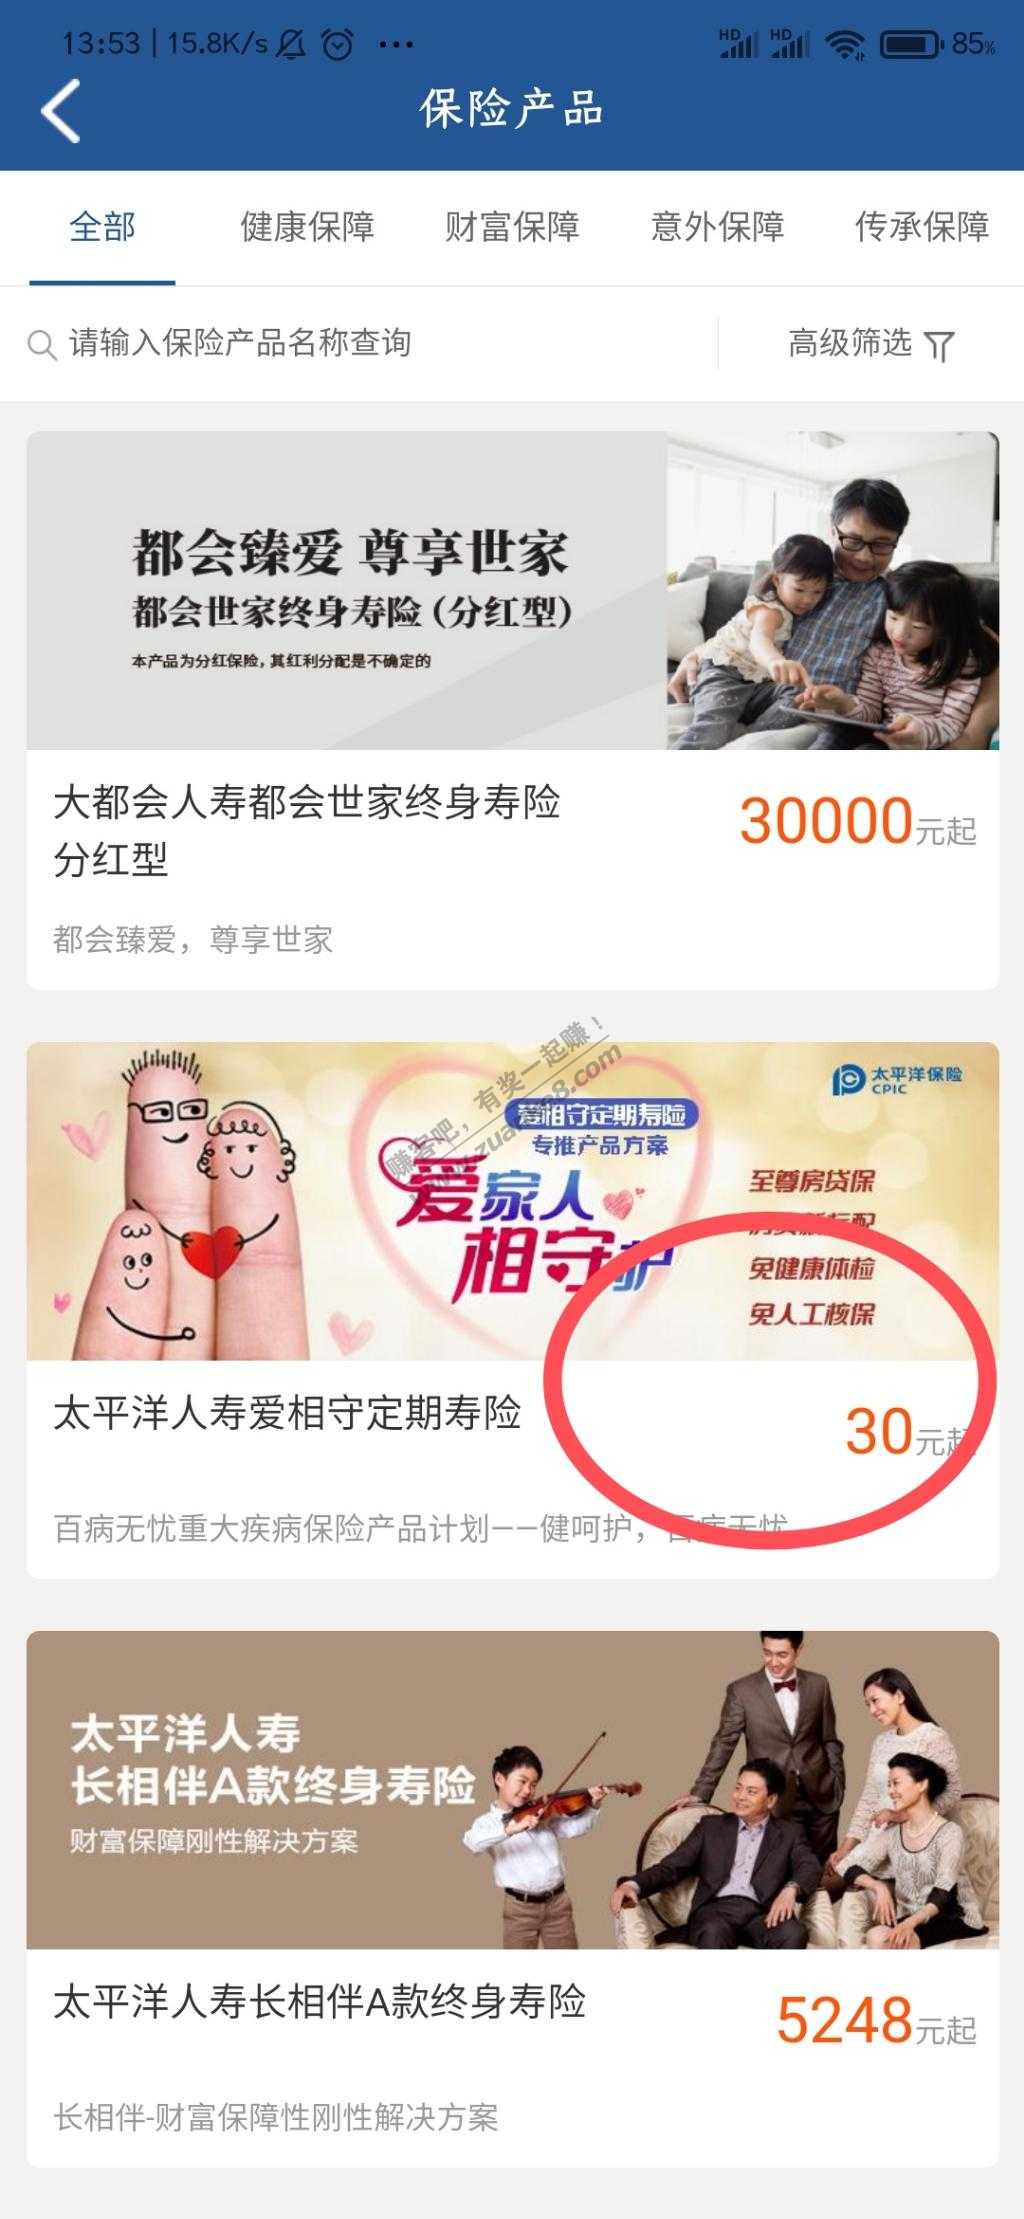 上海银行500话费成都没法上车-惠小助(52huixz.com)